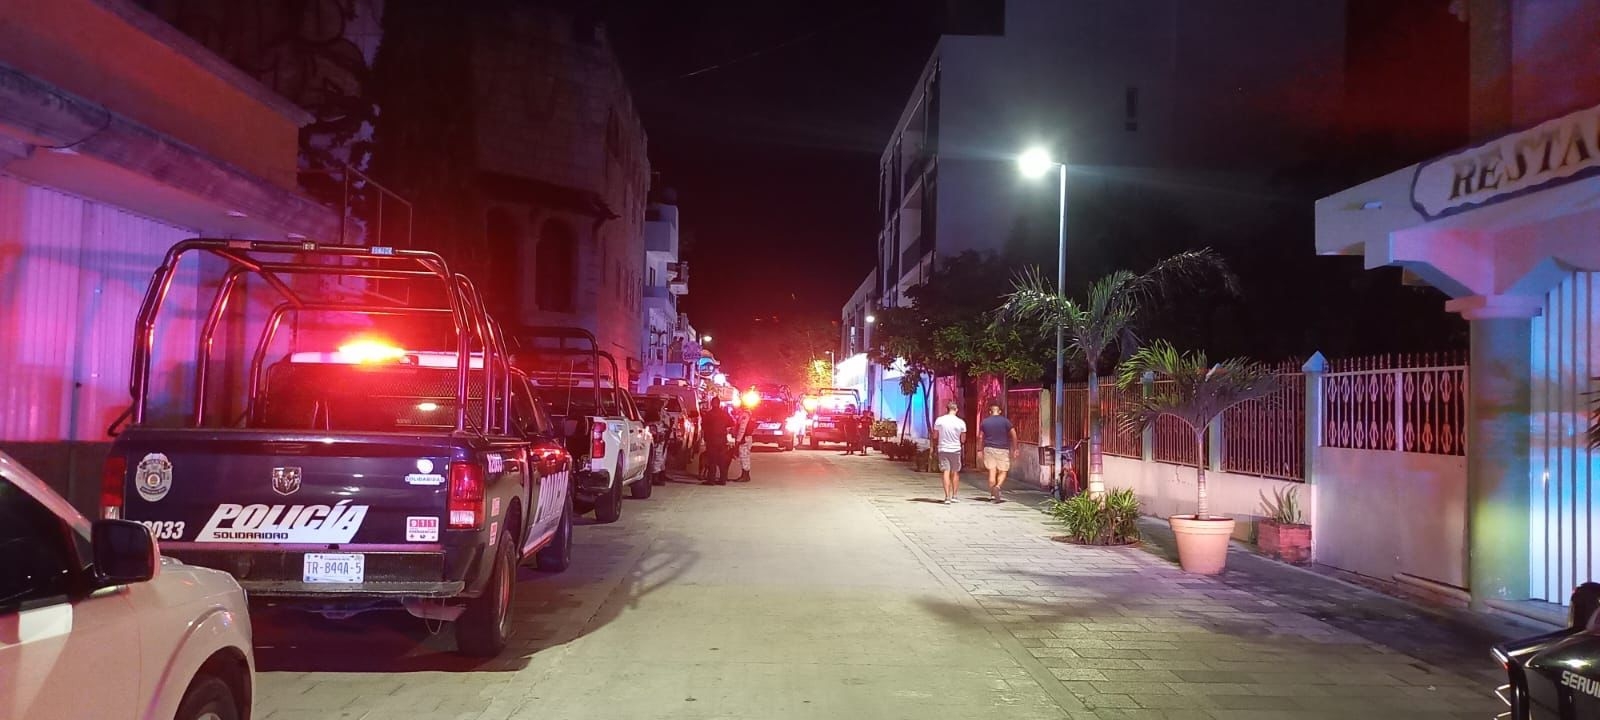 La balacera en el Bar The Roof de Playa del Carmen ocurrió el pasado 14 de agosto, lo que movilizó a elementos policiacos a la zona